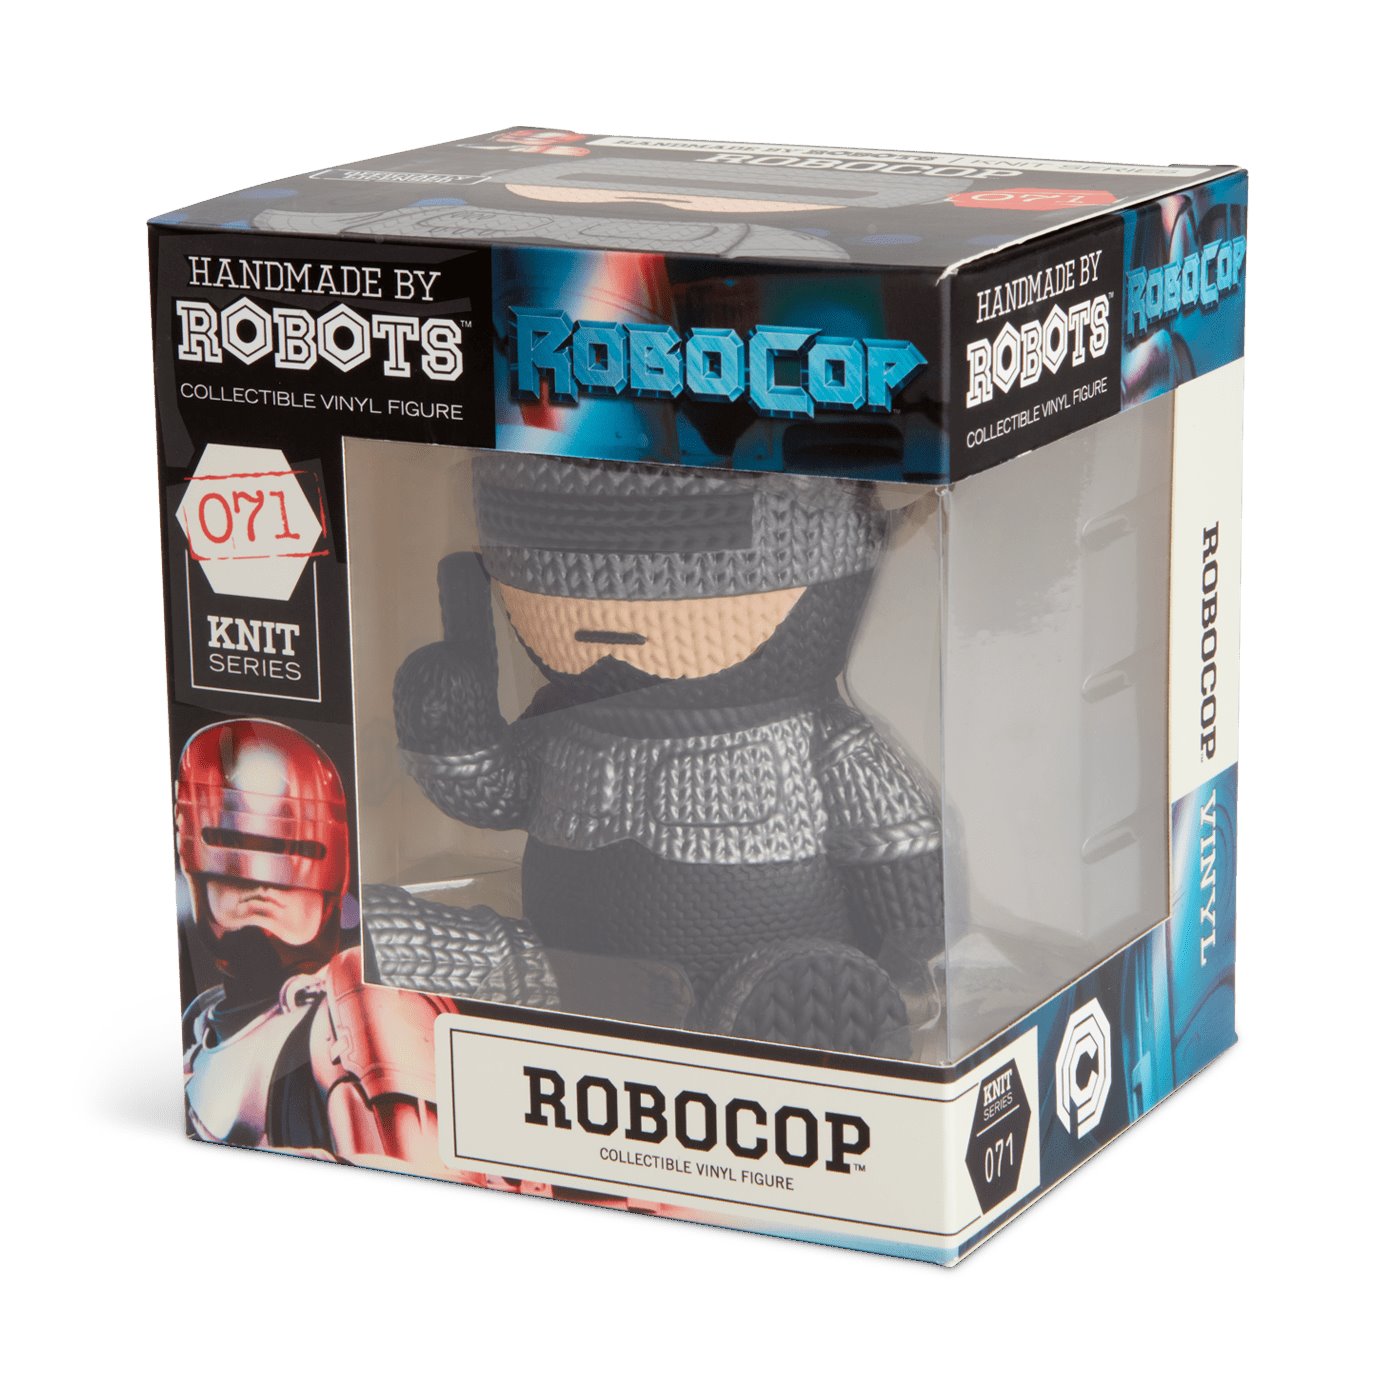 Handmade By Robots: Robocop - Robocop Vinyl Figure!